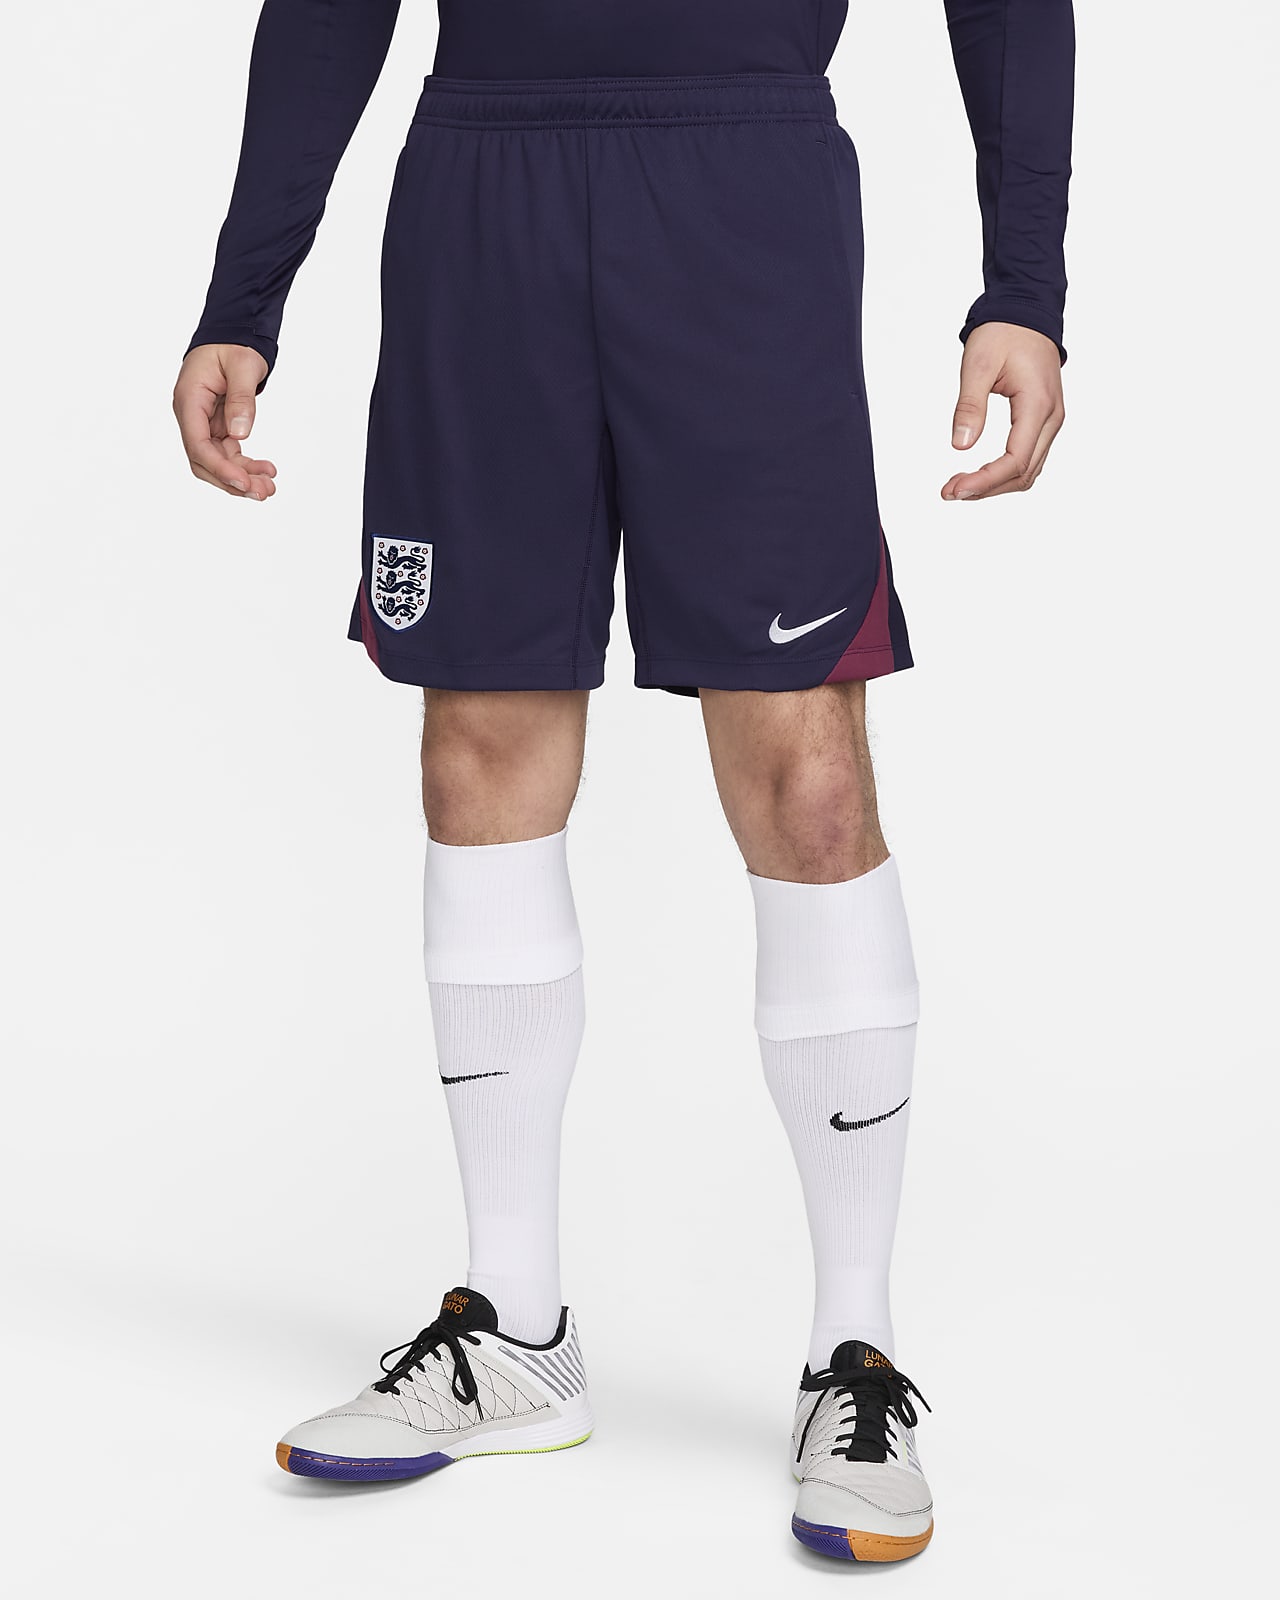 England Strike Nike Dri-FIT strikket fotballshorts til herre